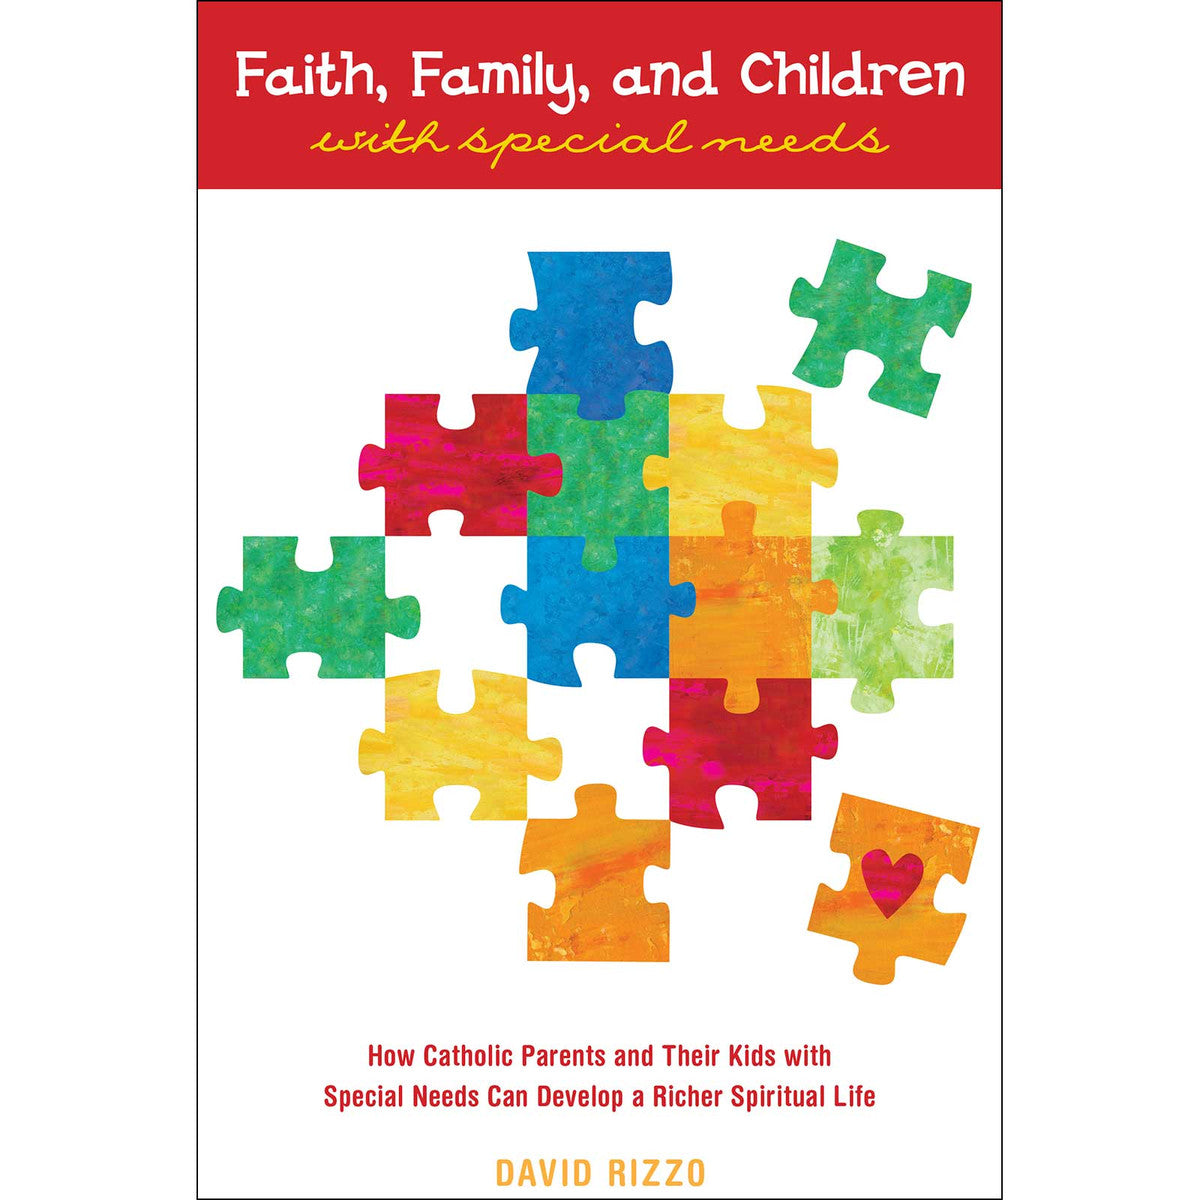 Fe, familia y niños con necesidades especiales: cómo los padres católicos y sus hijos con necesidades especiales pueden desarrollar una vida espiritual más rica